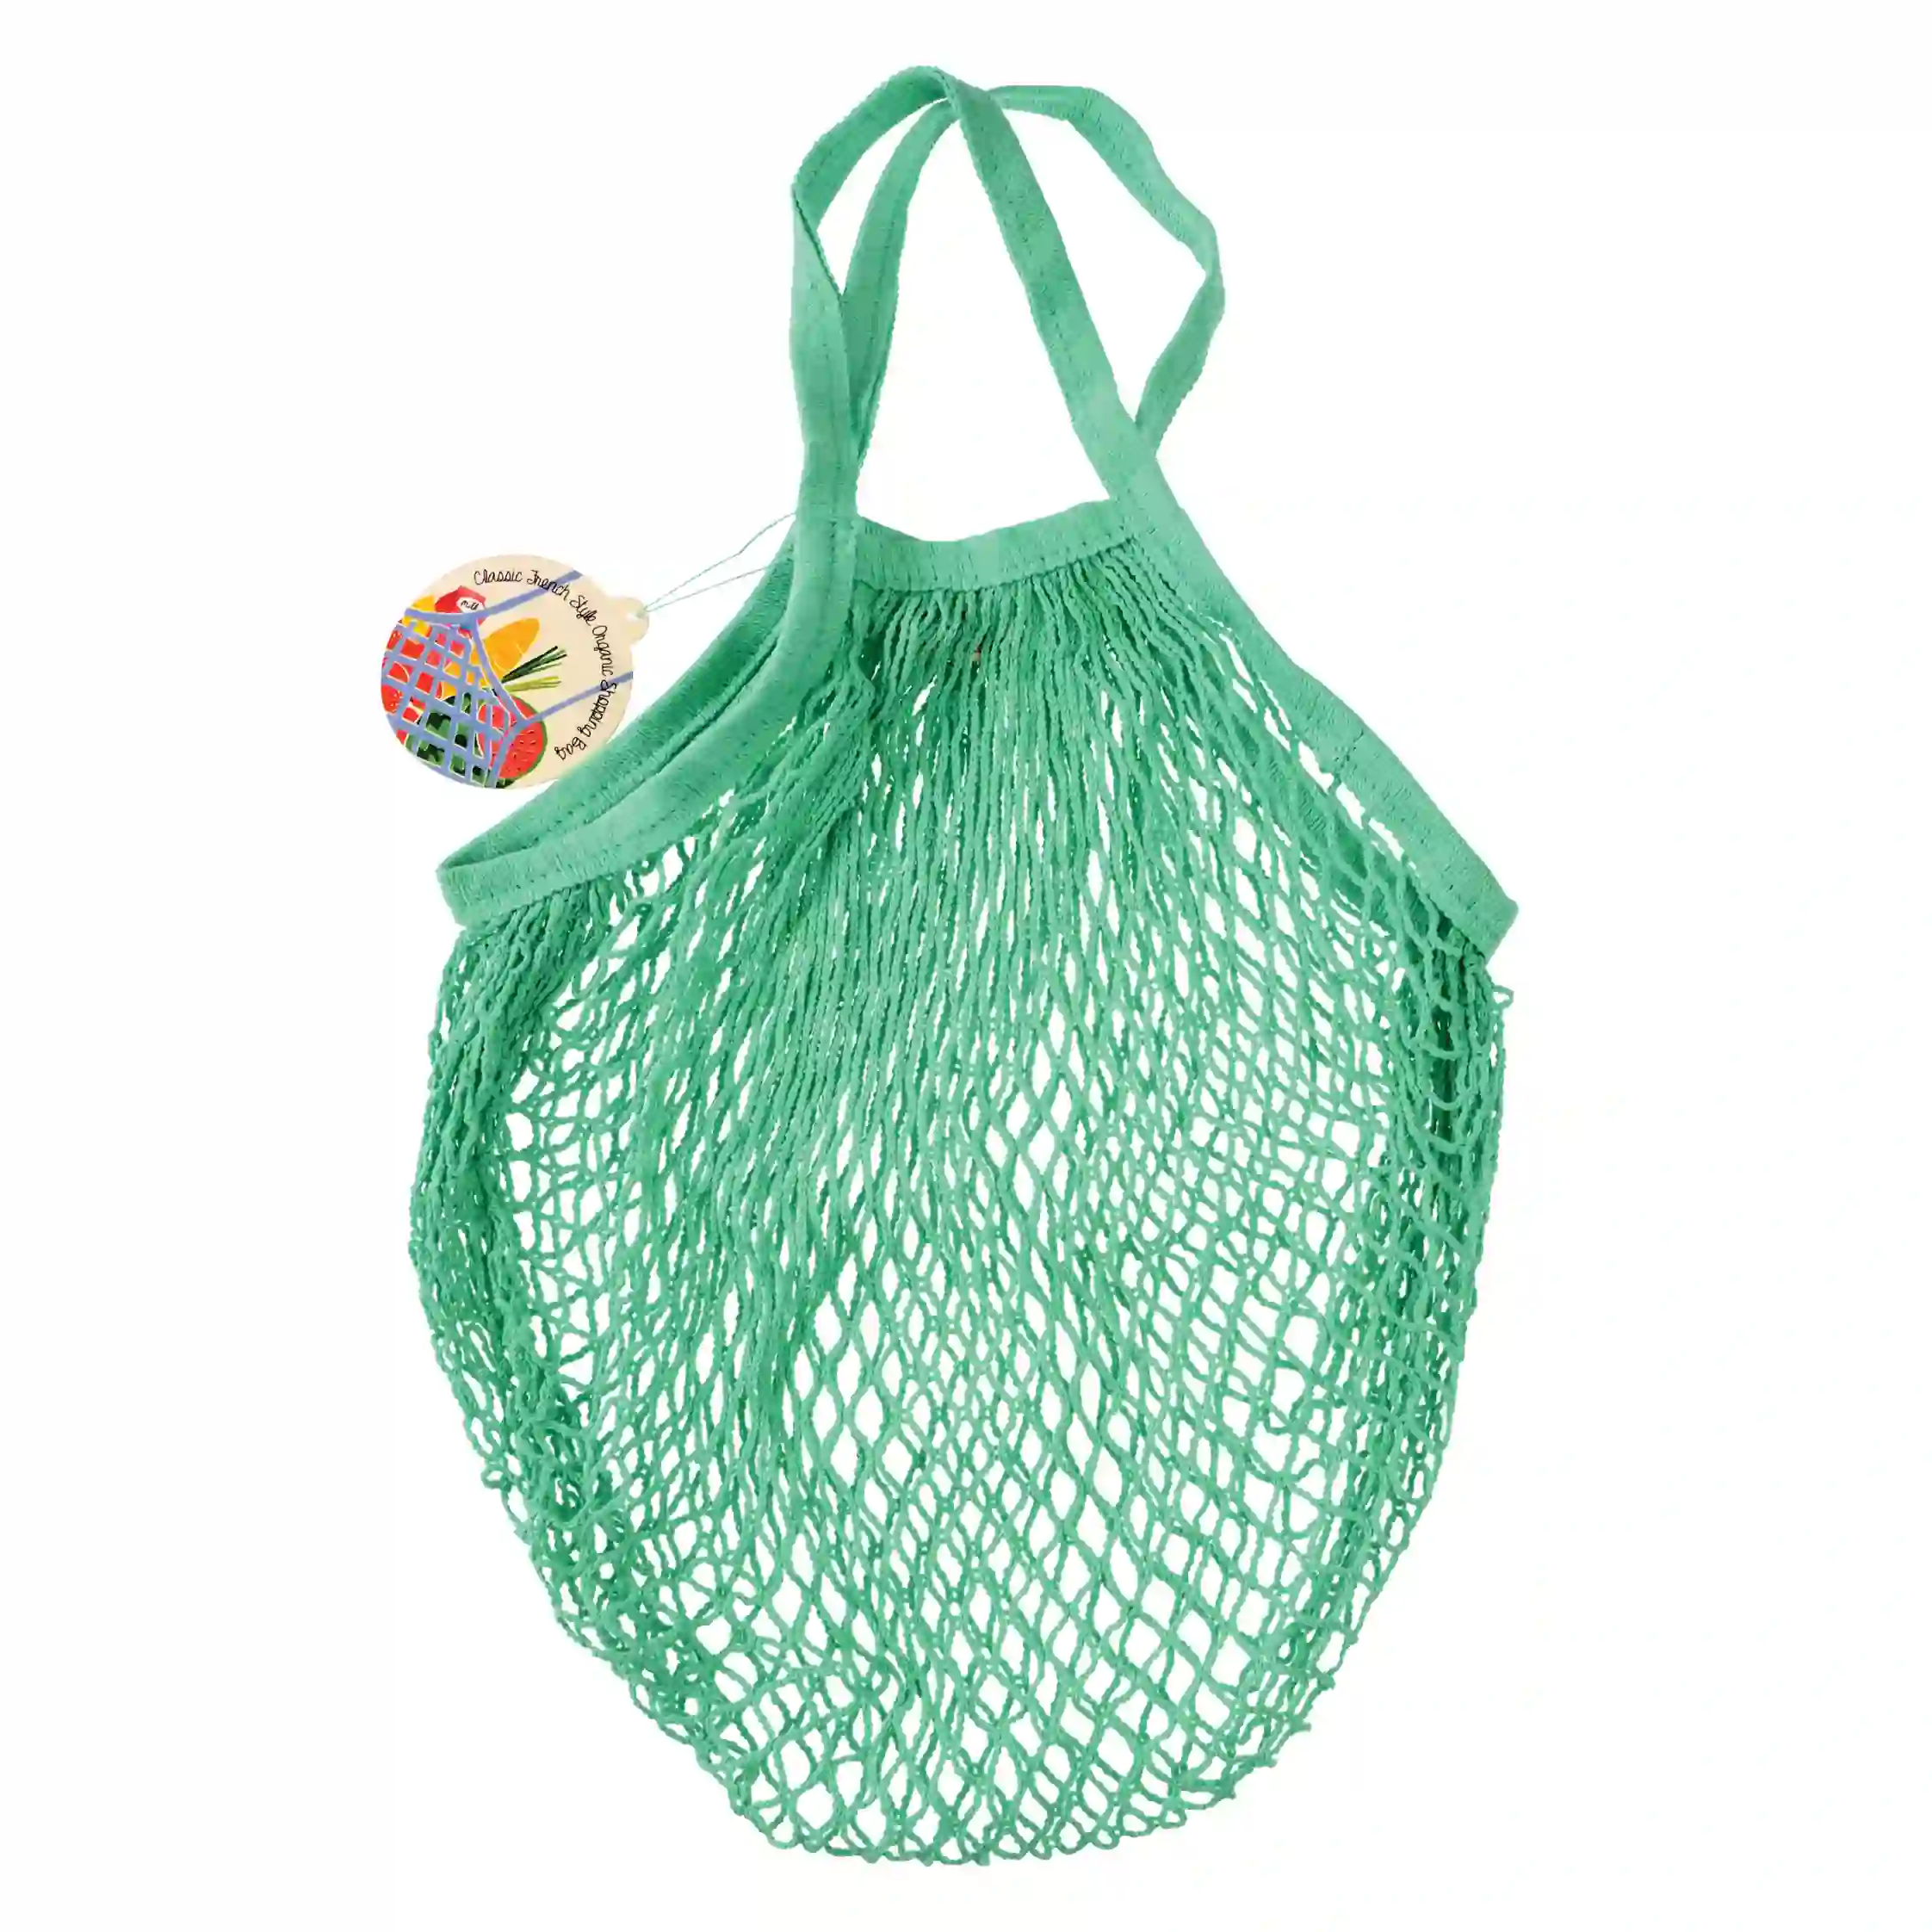 netzeinkaufstasche aus biobaumwolle in mint green